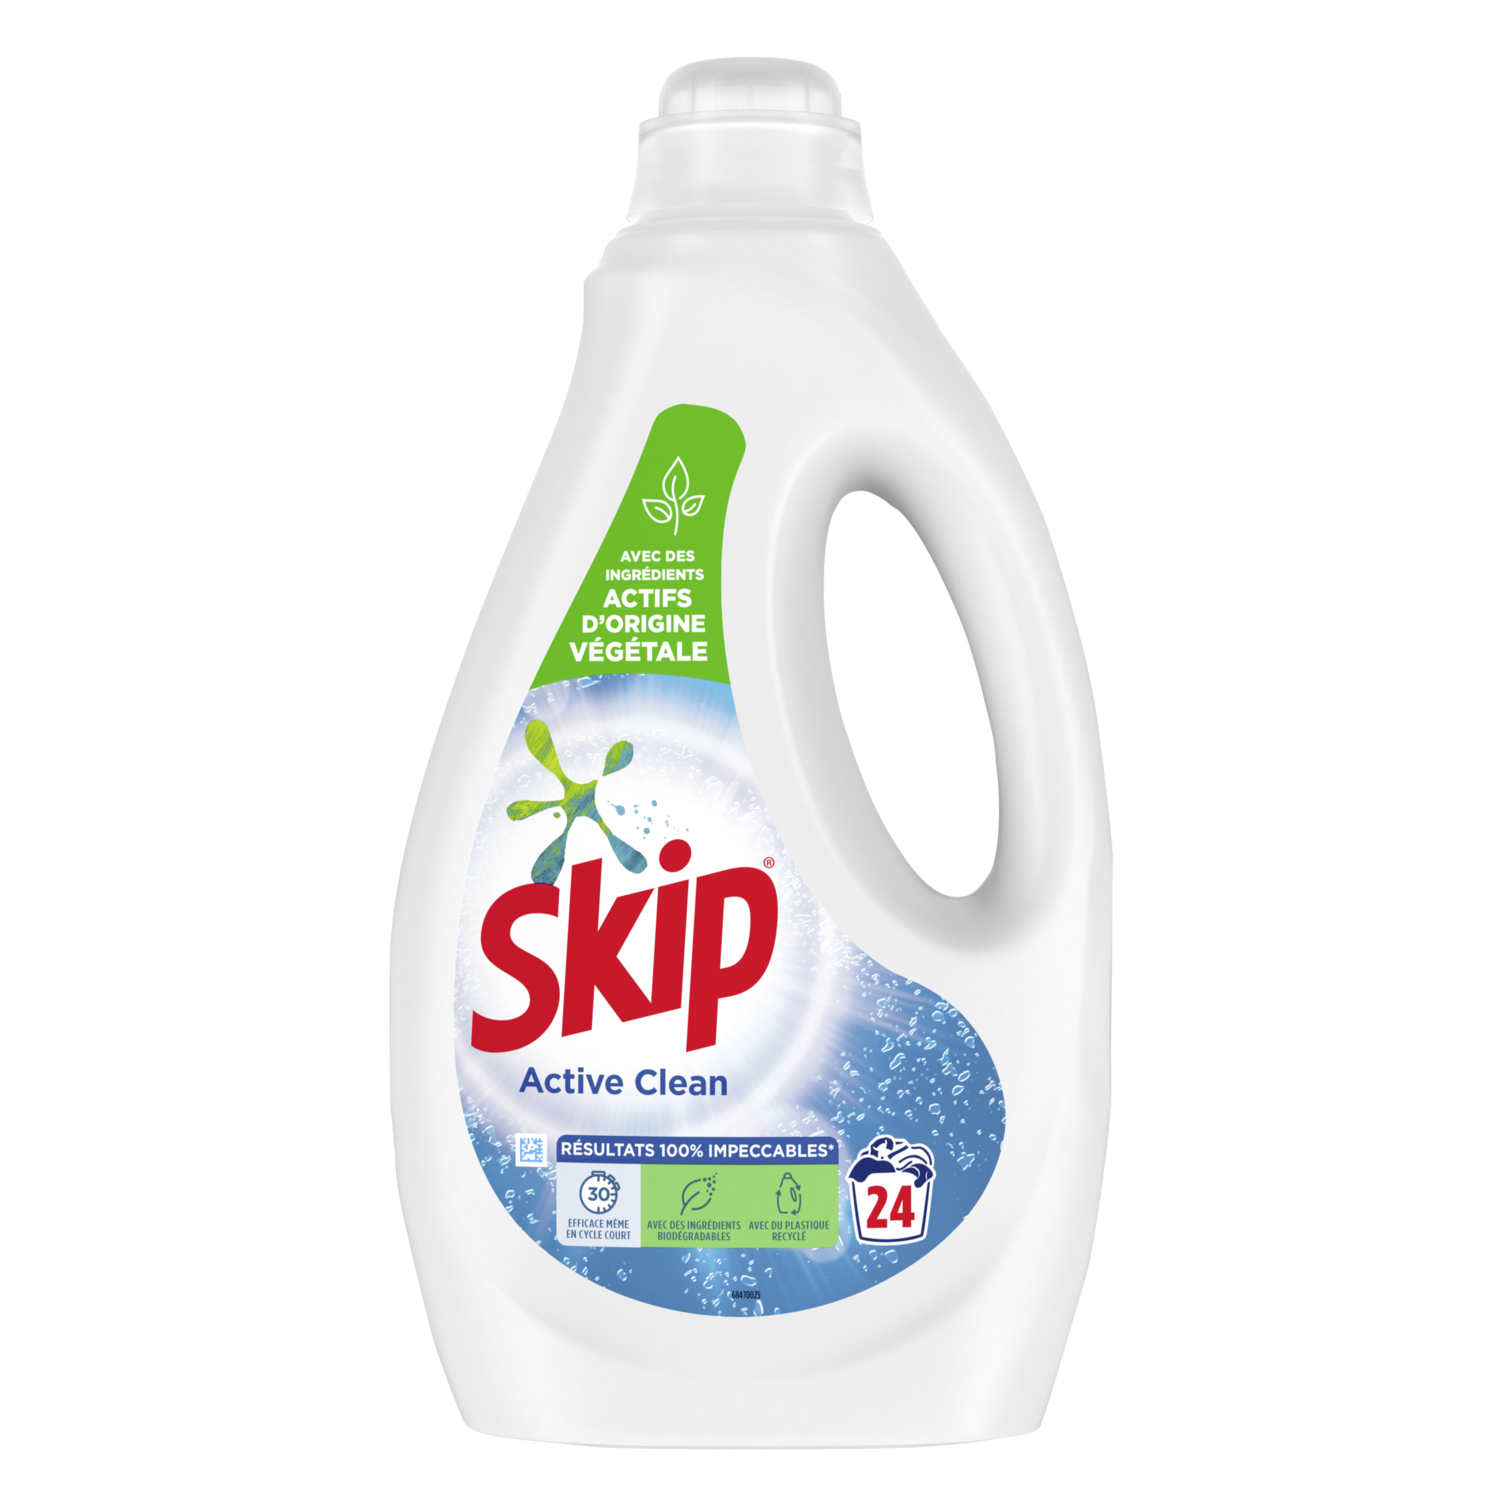 SKIP Skip lessive diluée active clean 25 lavages pas cher 